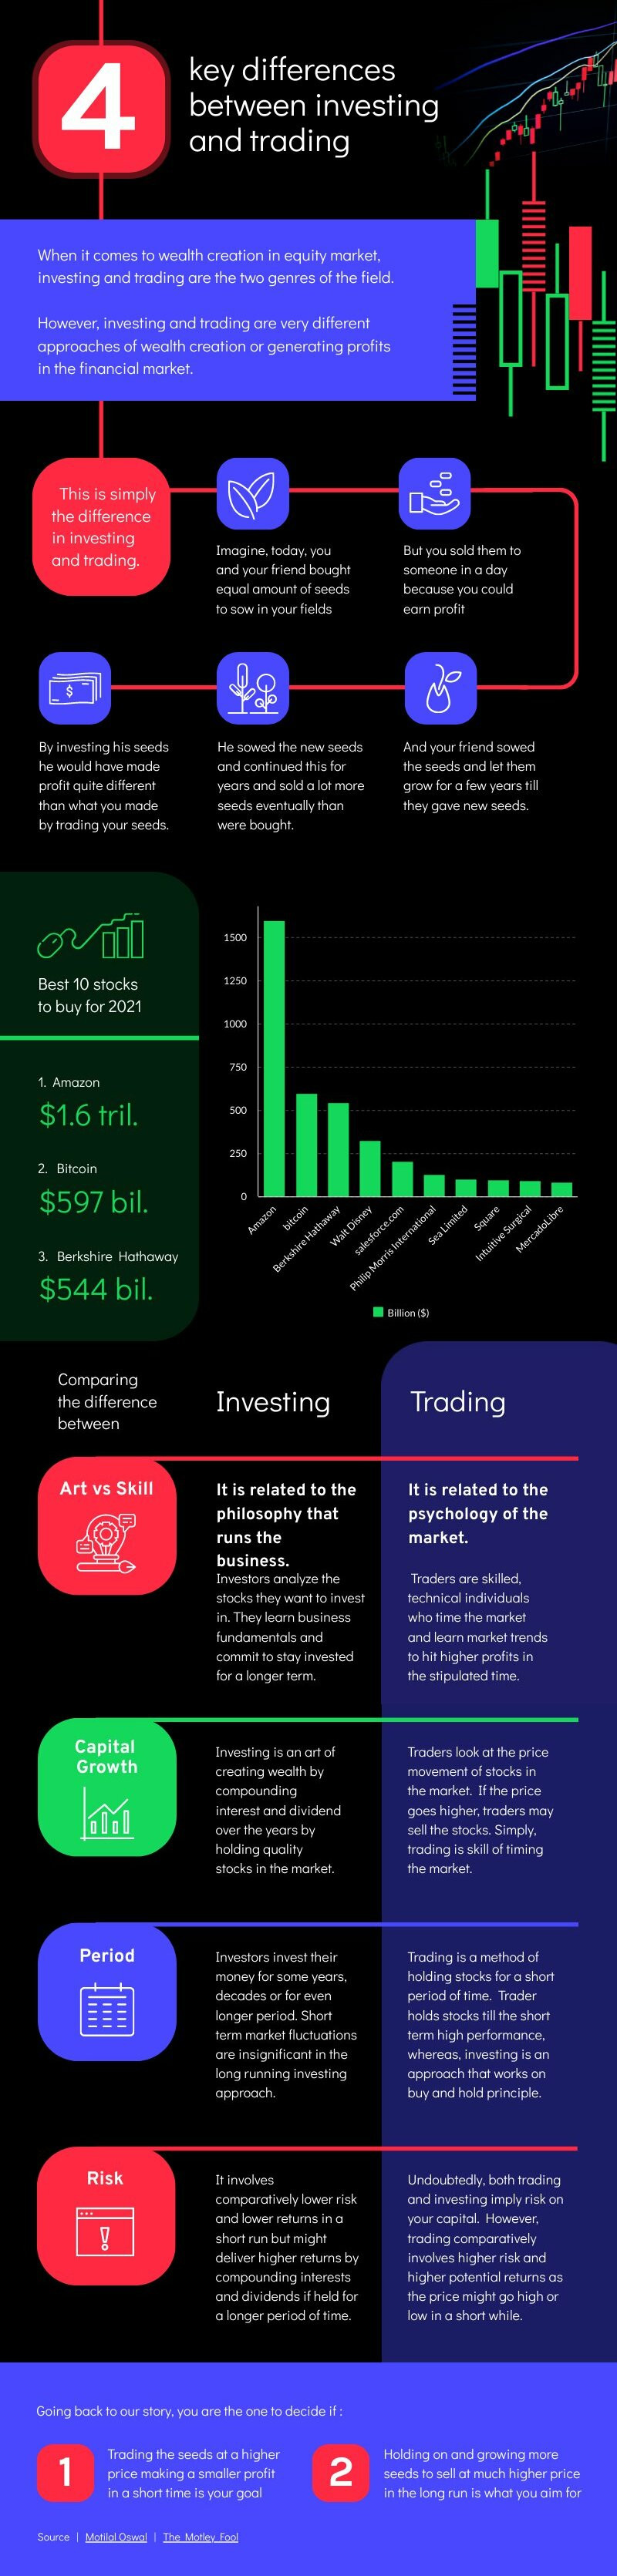 Investing vs Trading